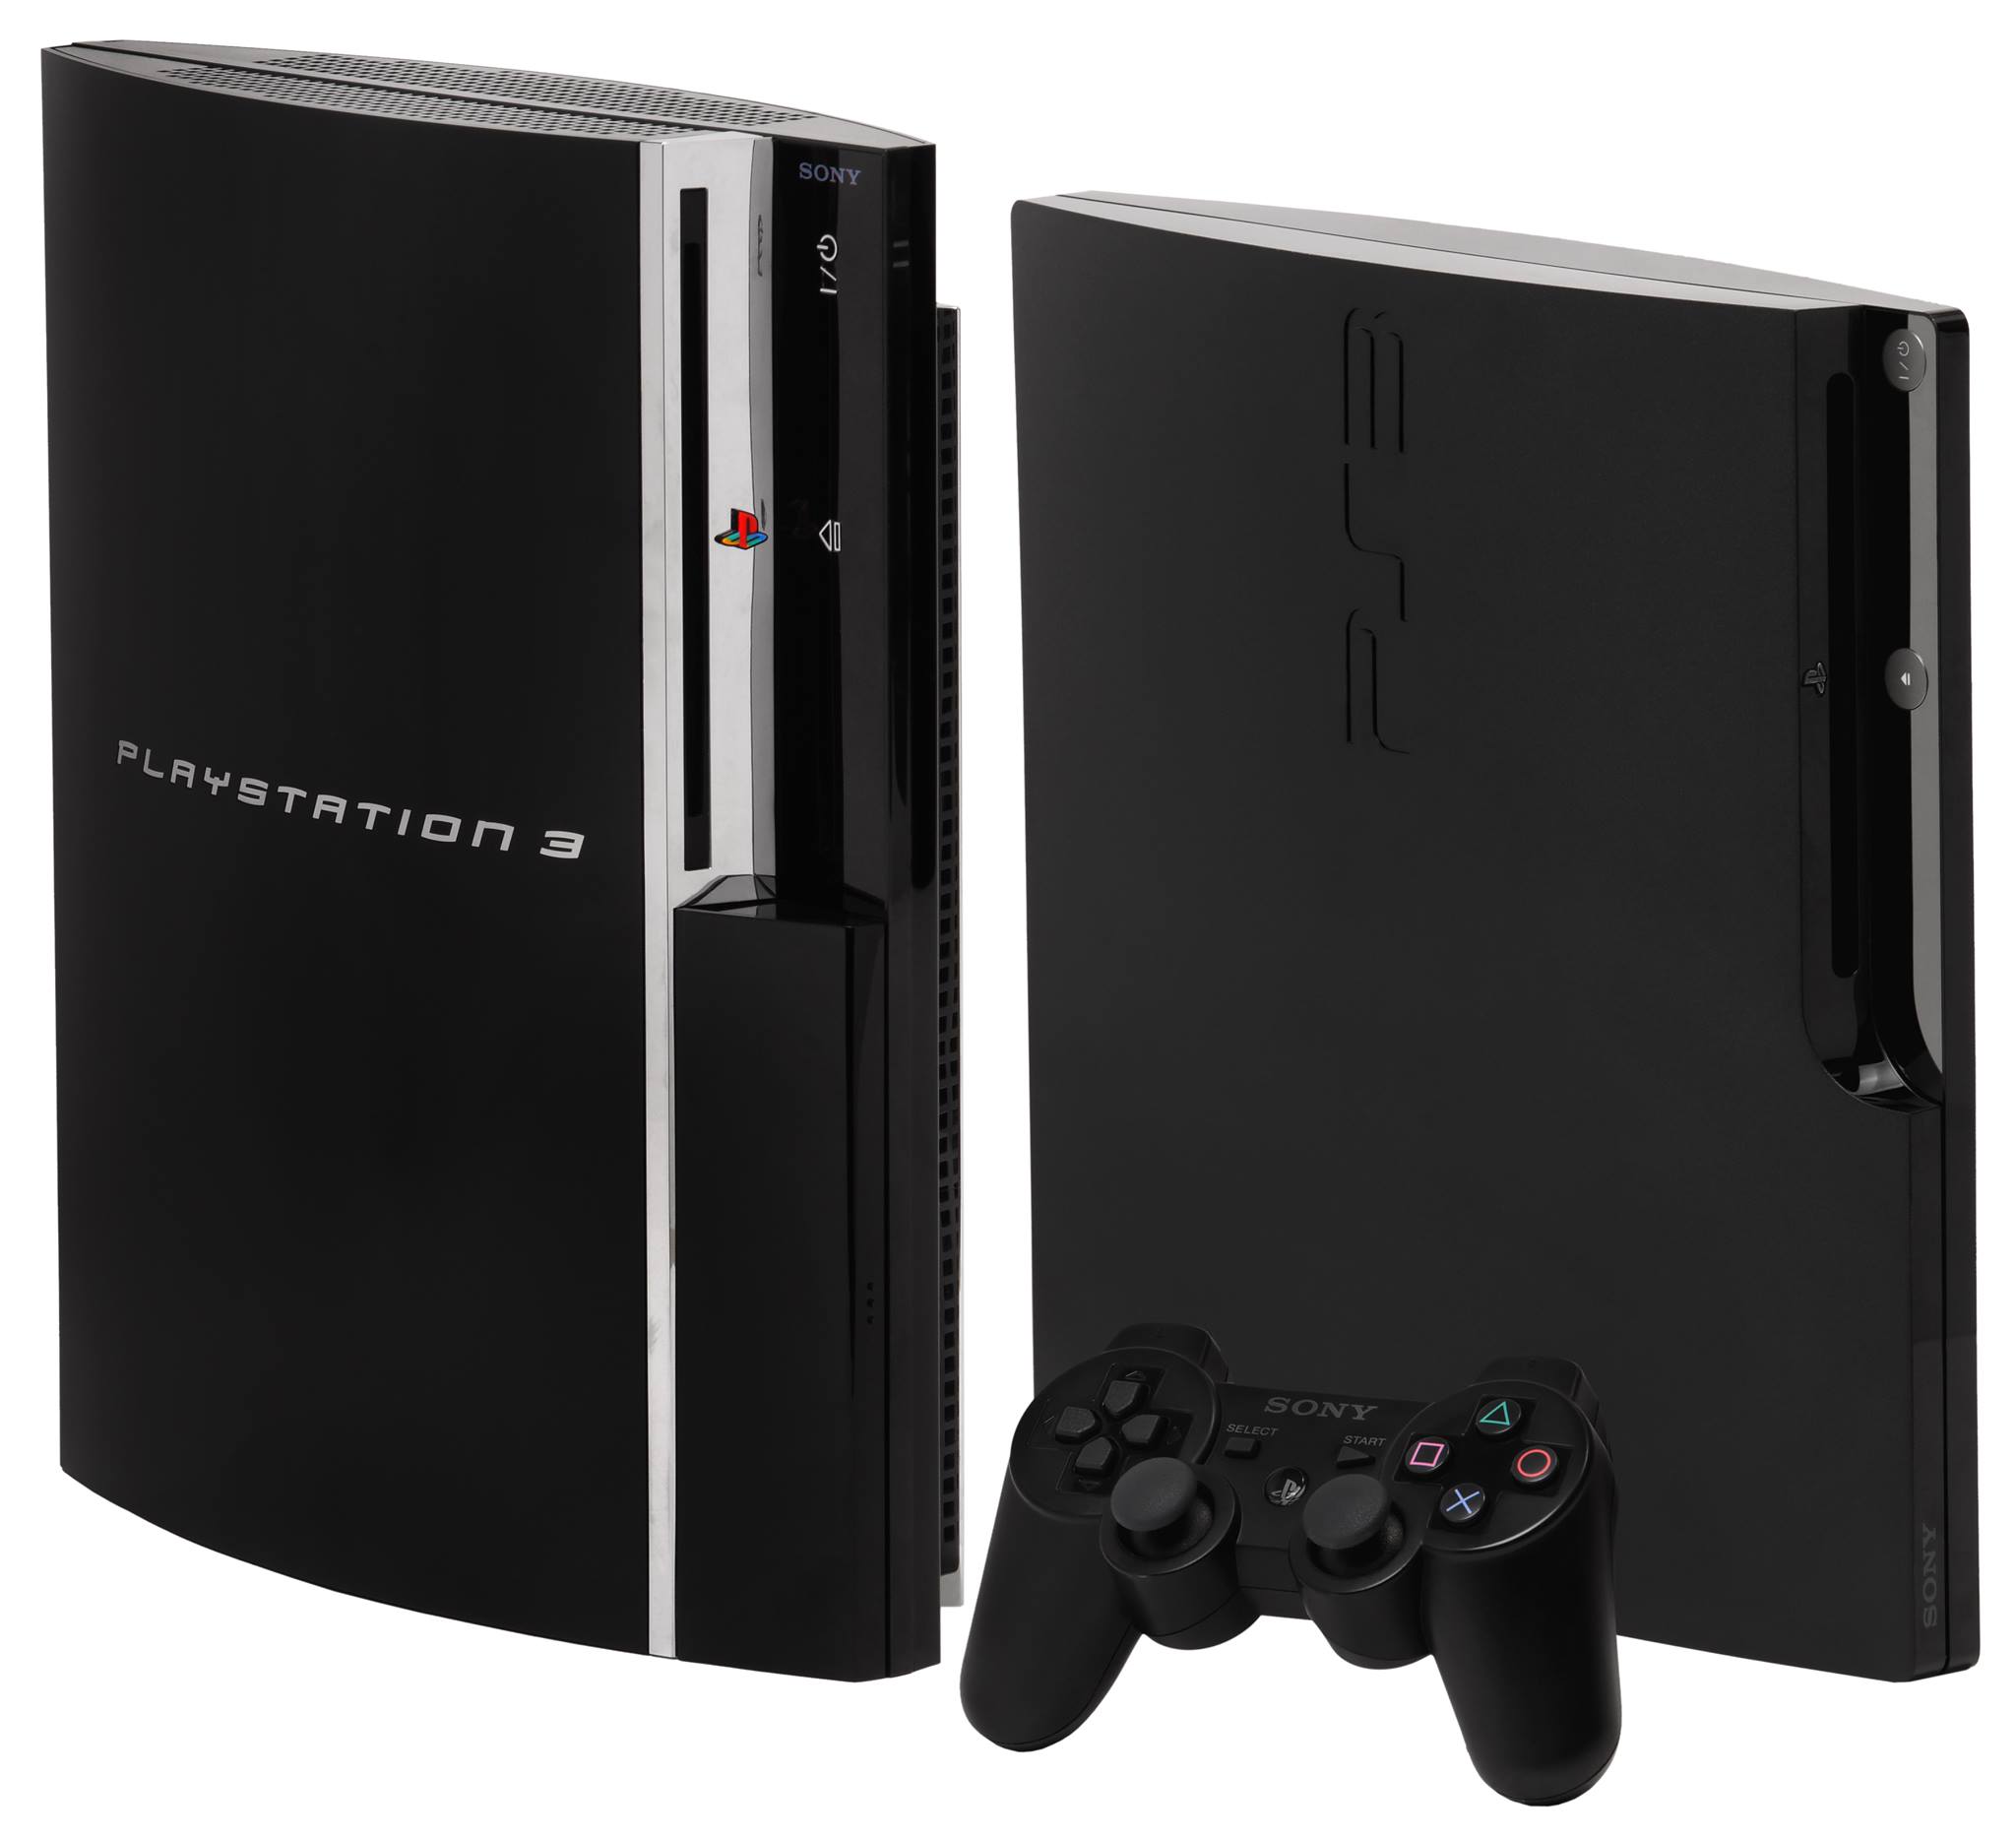 PS3 được thiết kế hiện đại hơn PS2 rất nhiều